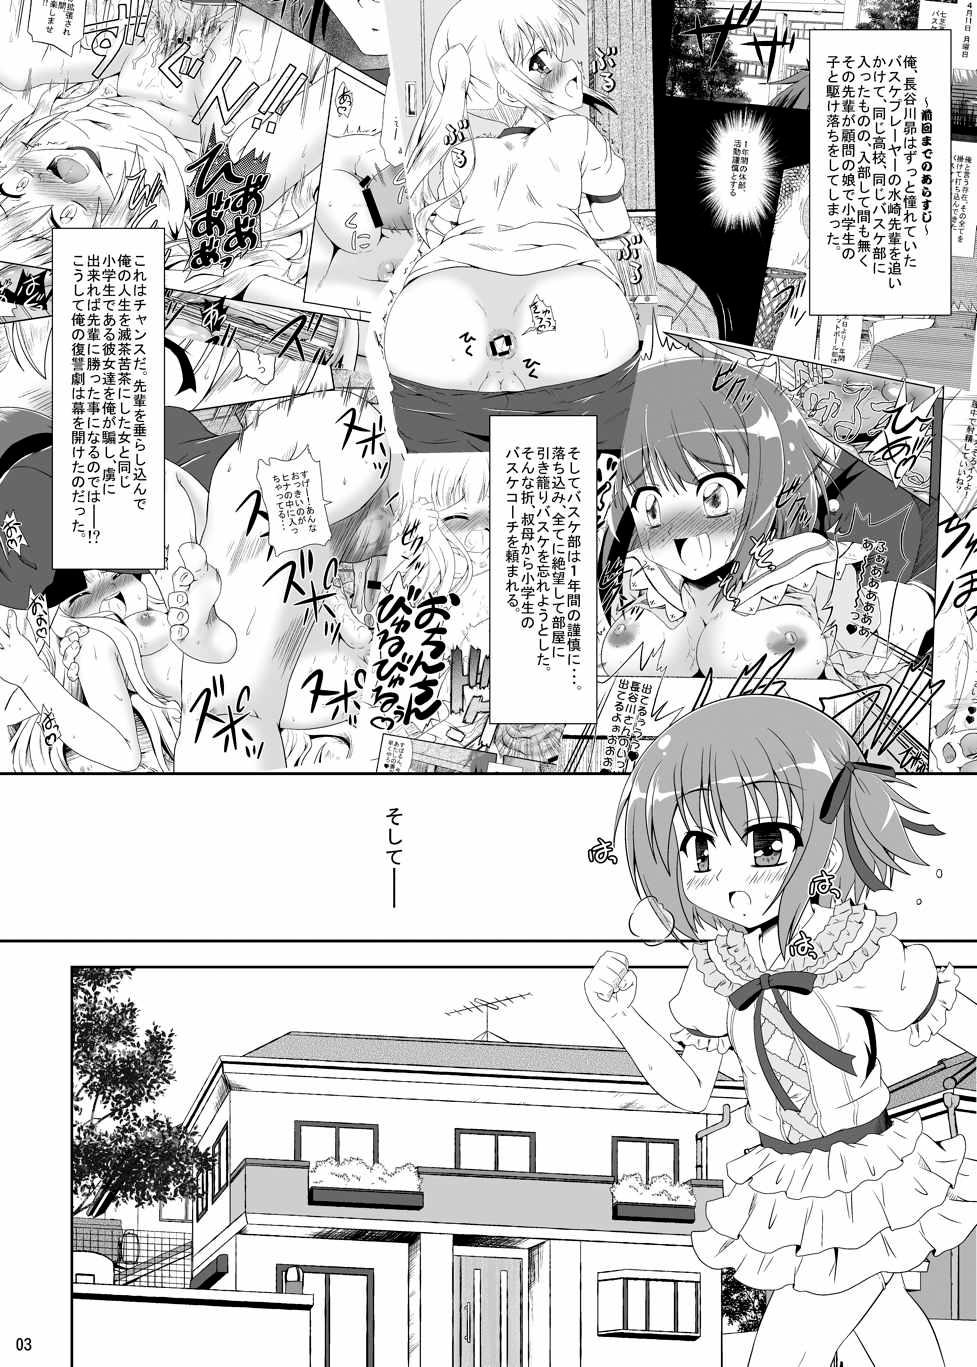 Lima ○Gakusei wa Saikou daze! Ni - Ro-kyu-bu Namorada - Page 2